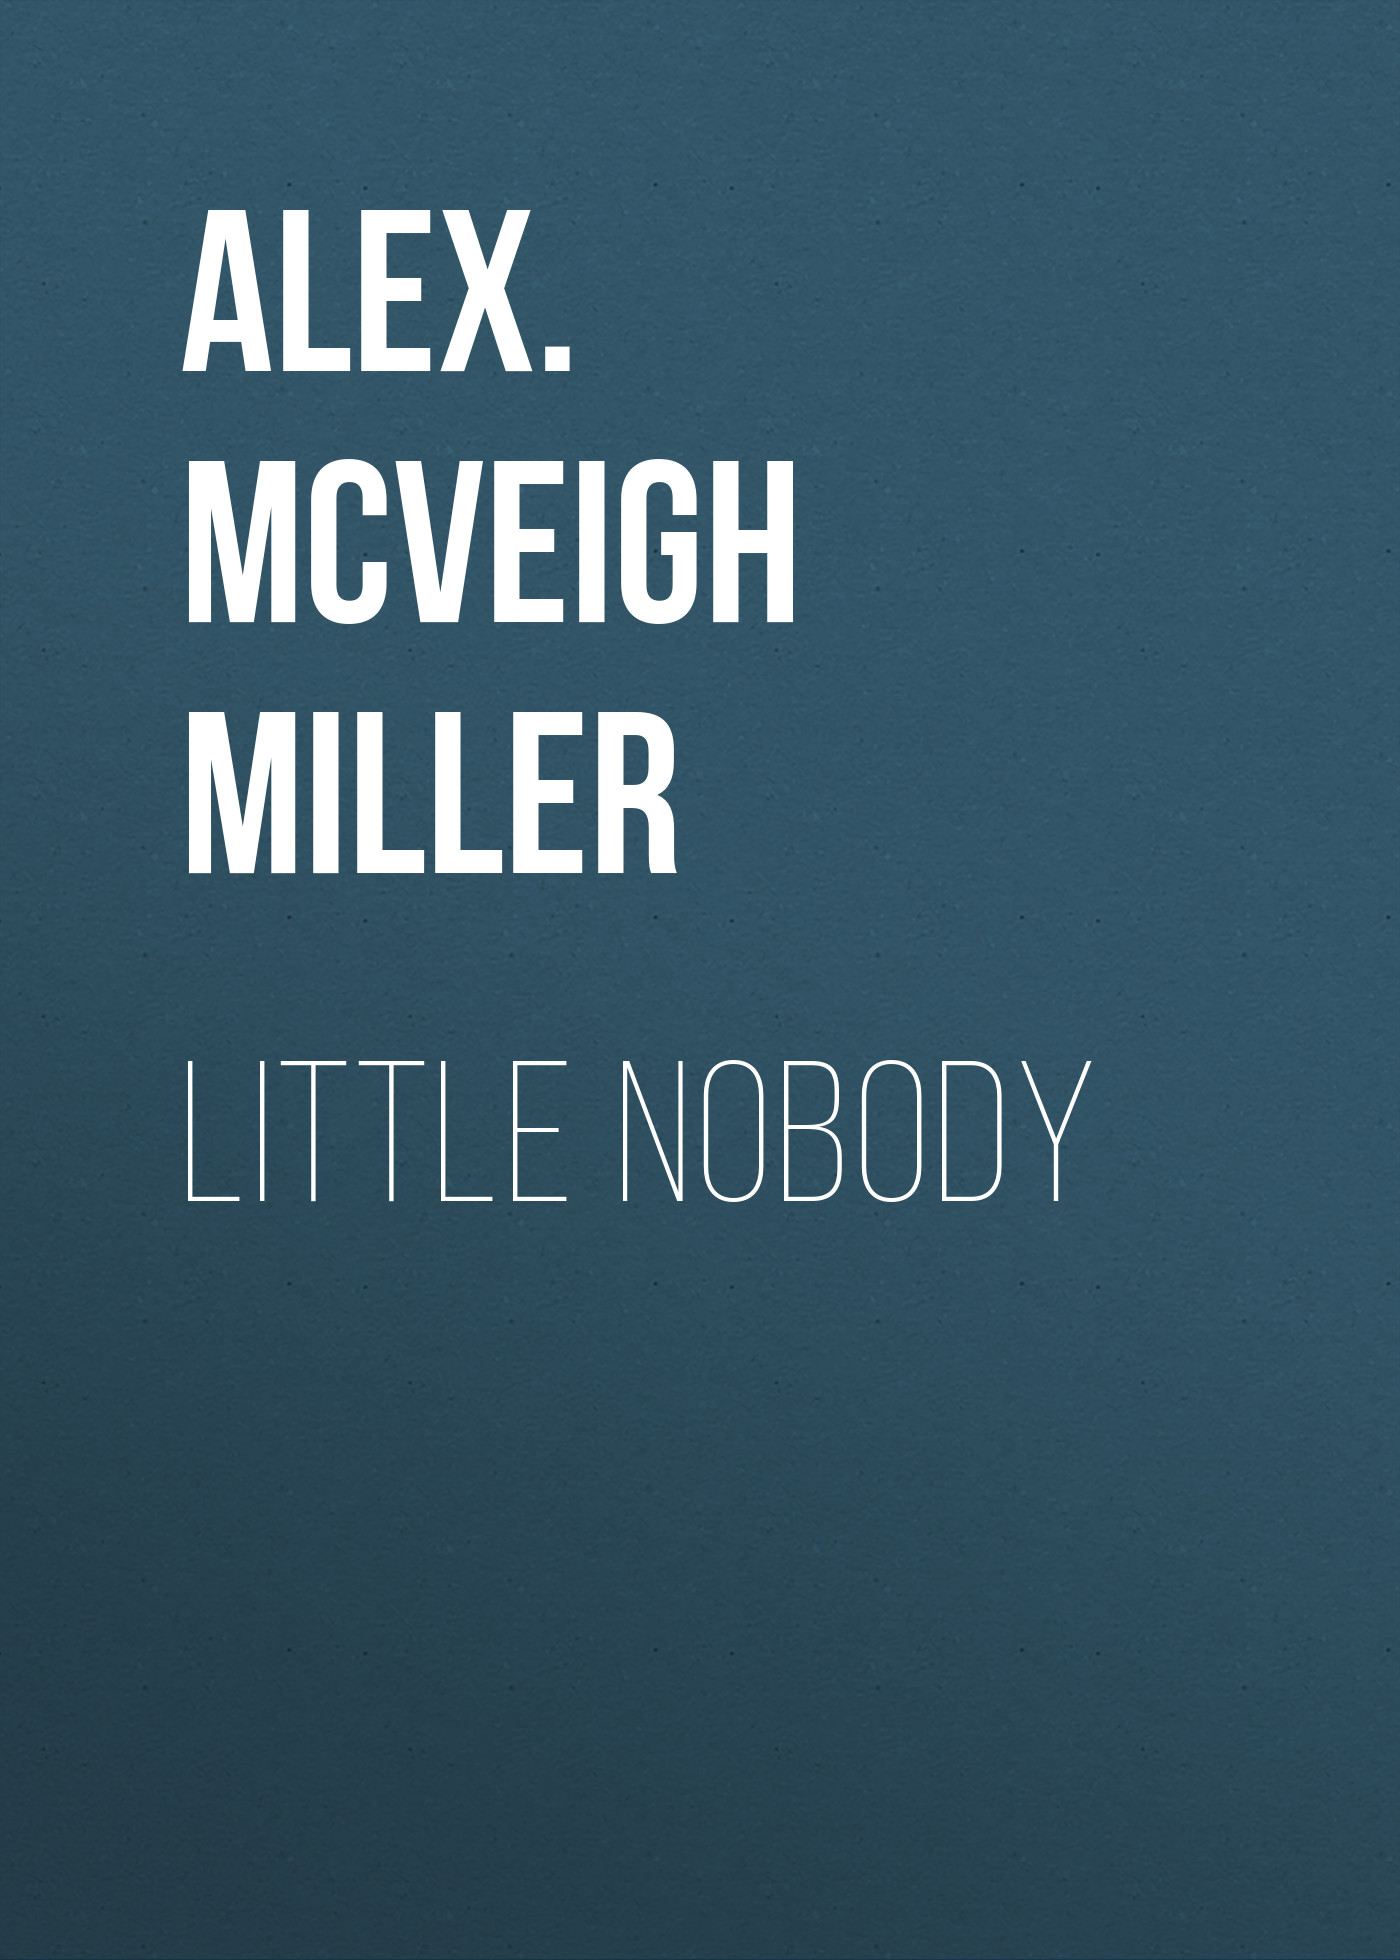 Книга Little Nobody из серии , созданная Alex. McVeigh Miller, может относится к жанру Зарубежная классика, Зарубежная старинная литература. Стоимость электронной книги Little Nobody с идентификатором 35007857 составляет 0 руб.